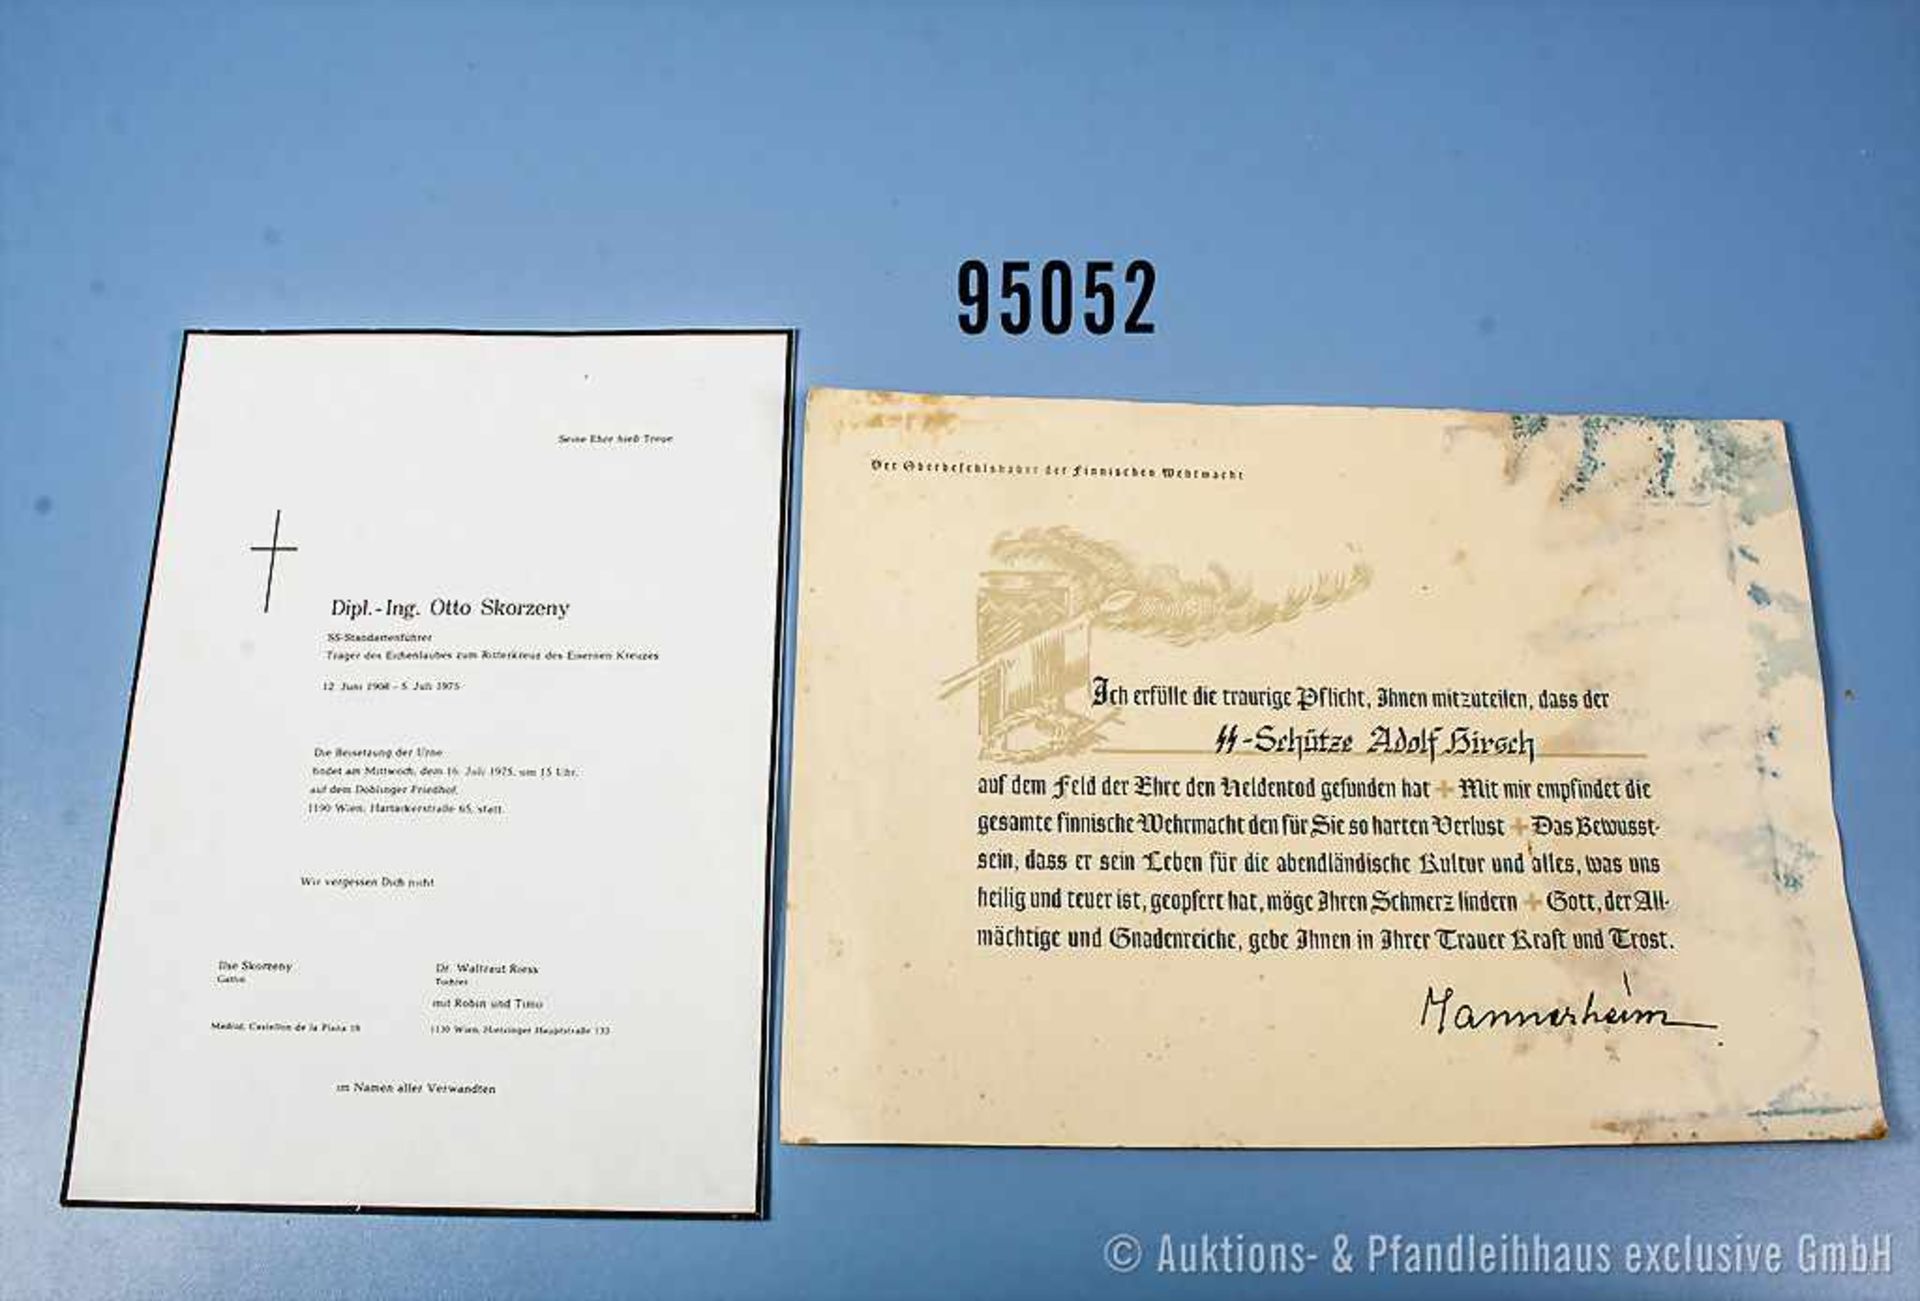 Konv. Gefallenen-Urkunde eines SS-Schützen sowie Todesanzeige des Eichenlaubträgers Otto Skorzeny,